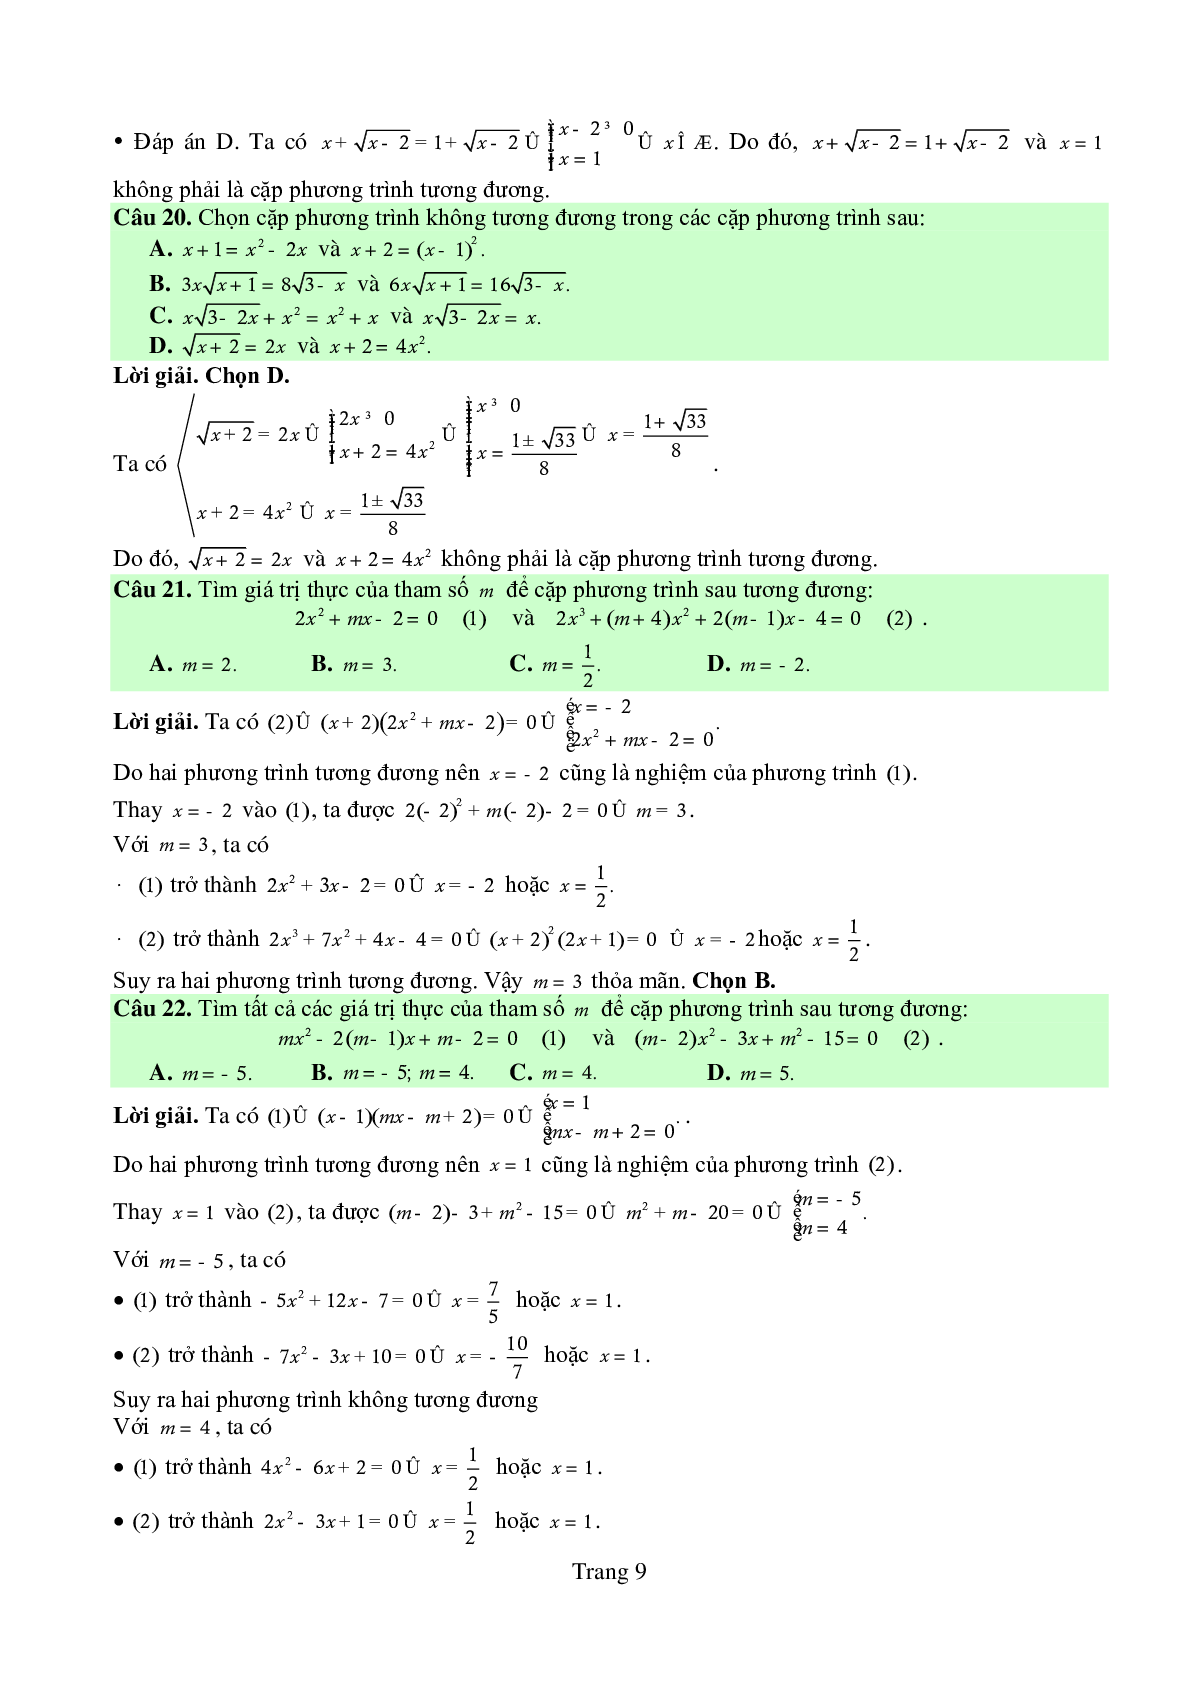 Chuyên đề: Phương trình môn Toán lớp 10 có lời giải chi tiết (trang 9)